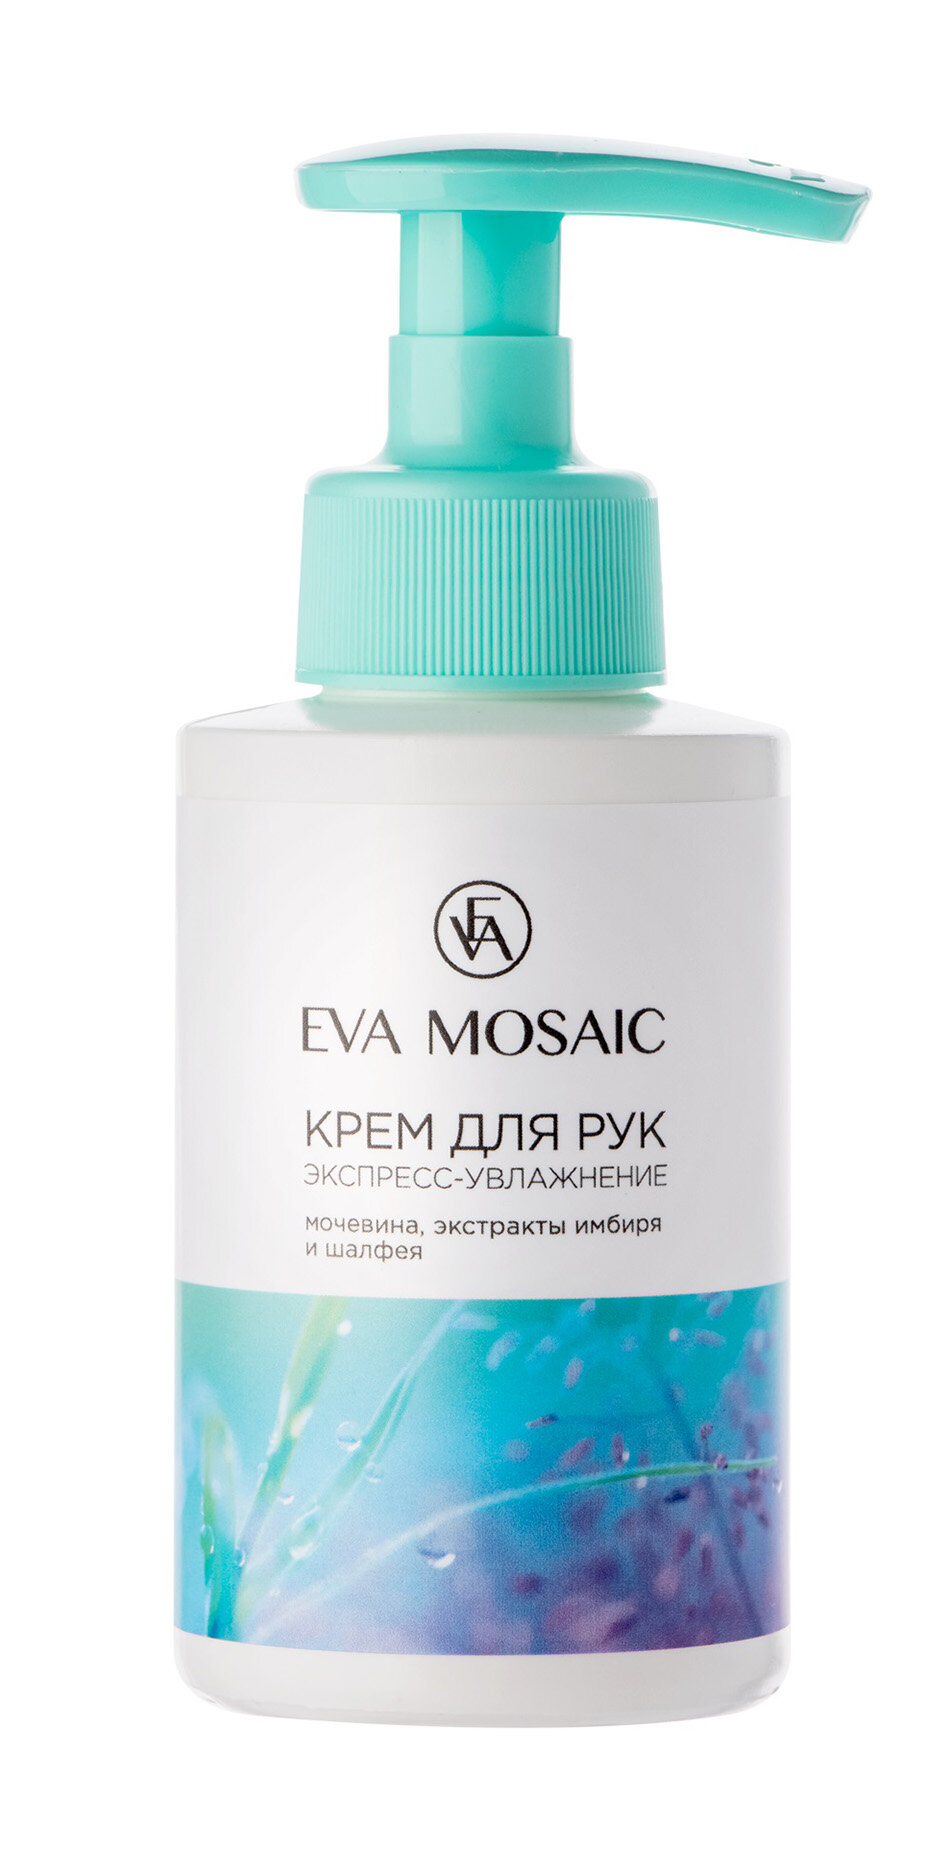 Крем для рук Eva Mosaic "Экспресс-увлажнение" с экстрактом имбиря и шалфея, 150мл Unknown - фото №1